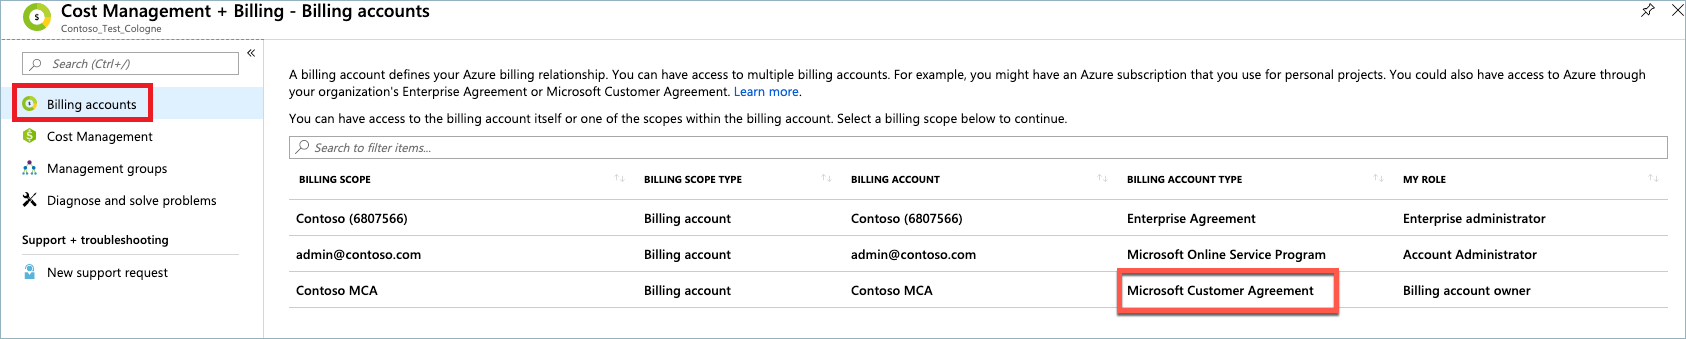 لقطة شاشة تعرض نوع اتفاقية عملاء Microsoft في صفحة حسابات الفوترة.